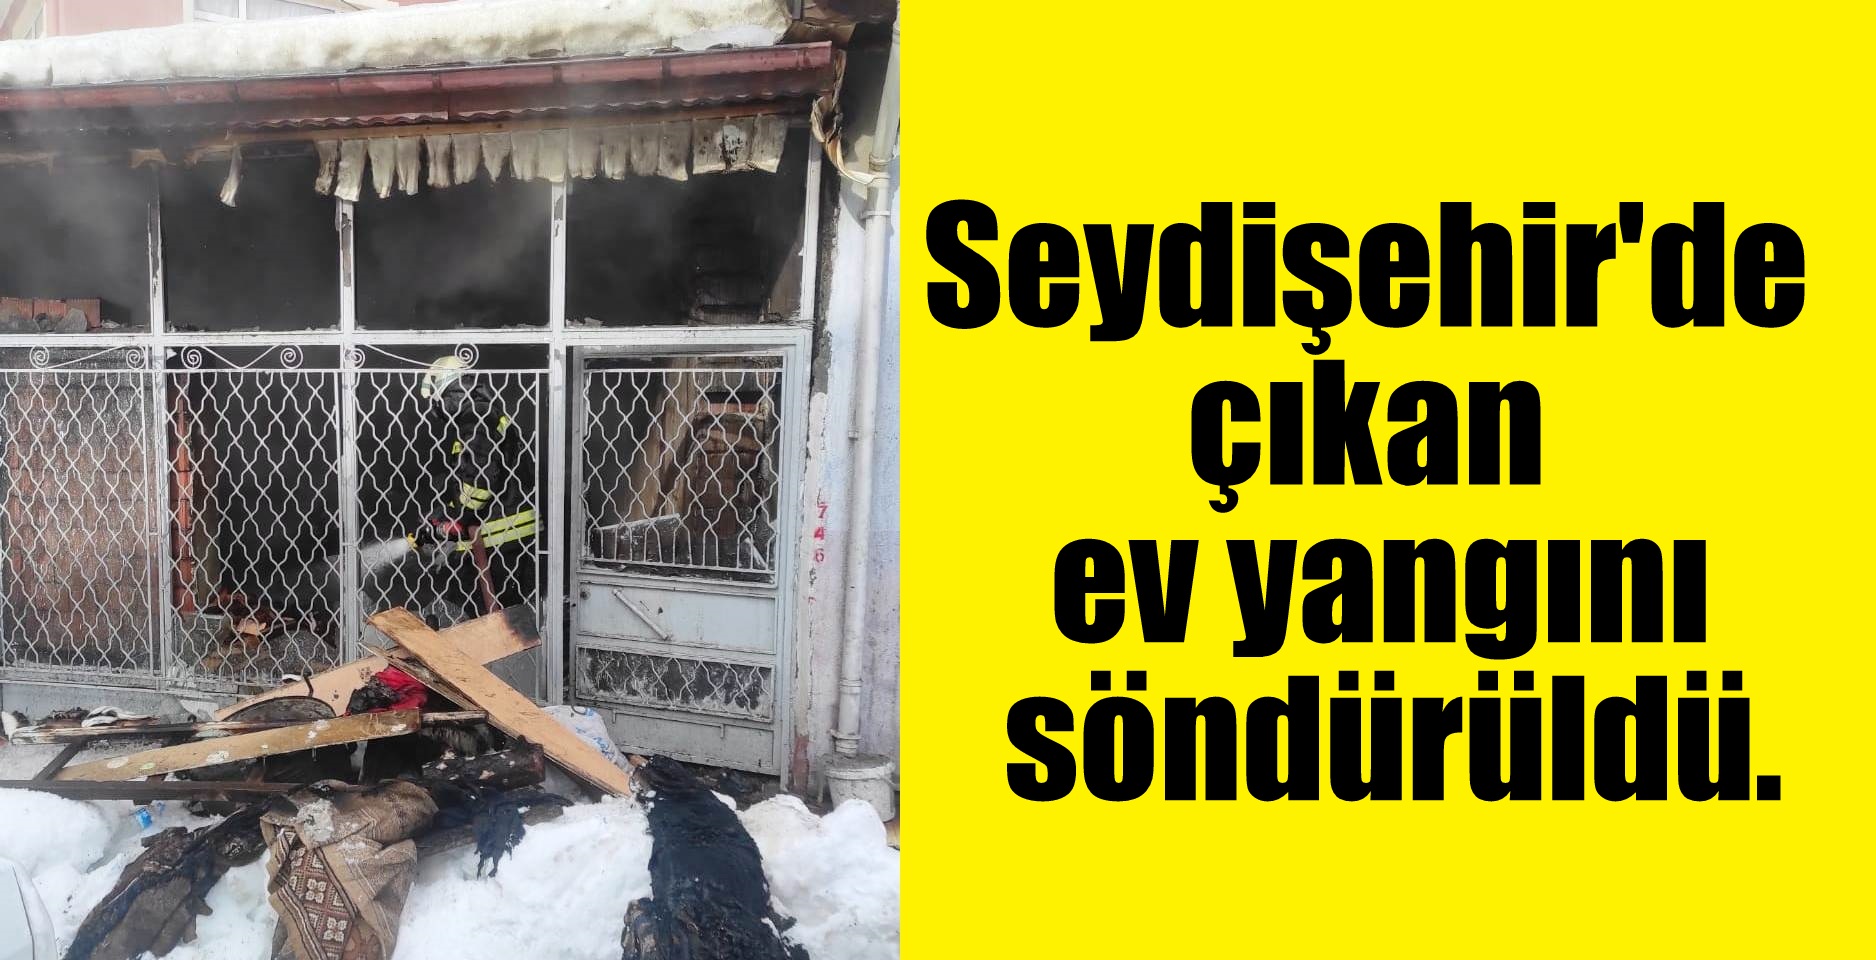 Seydişehir'de çıkan ev yangını söndürüldü